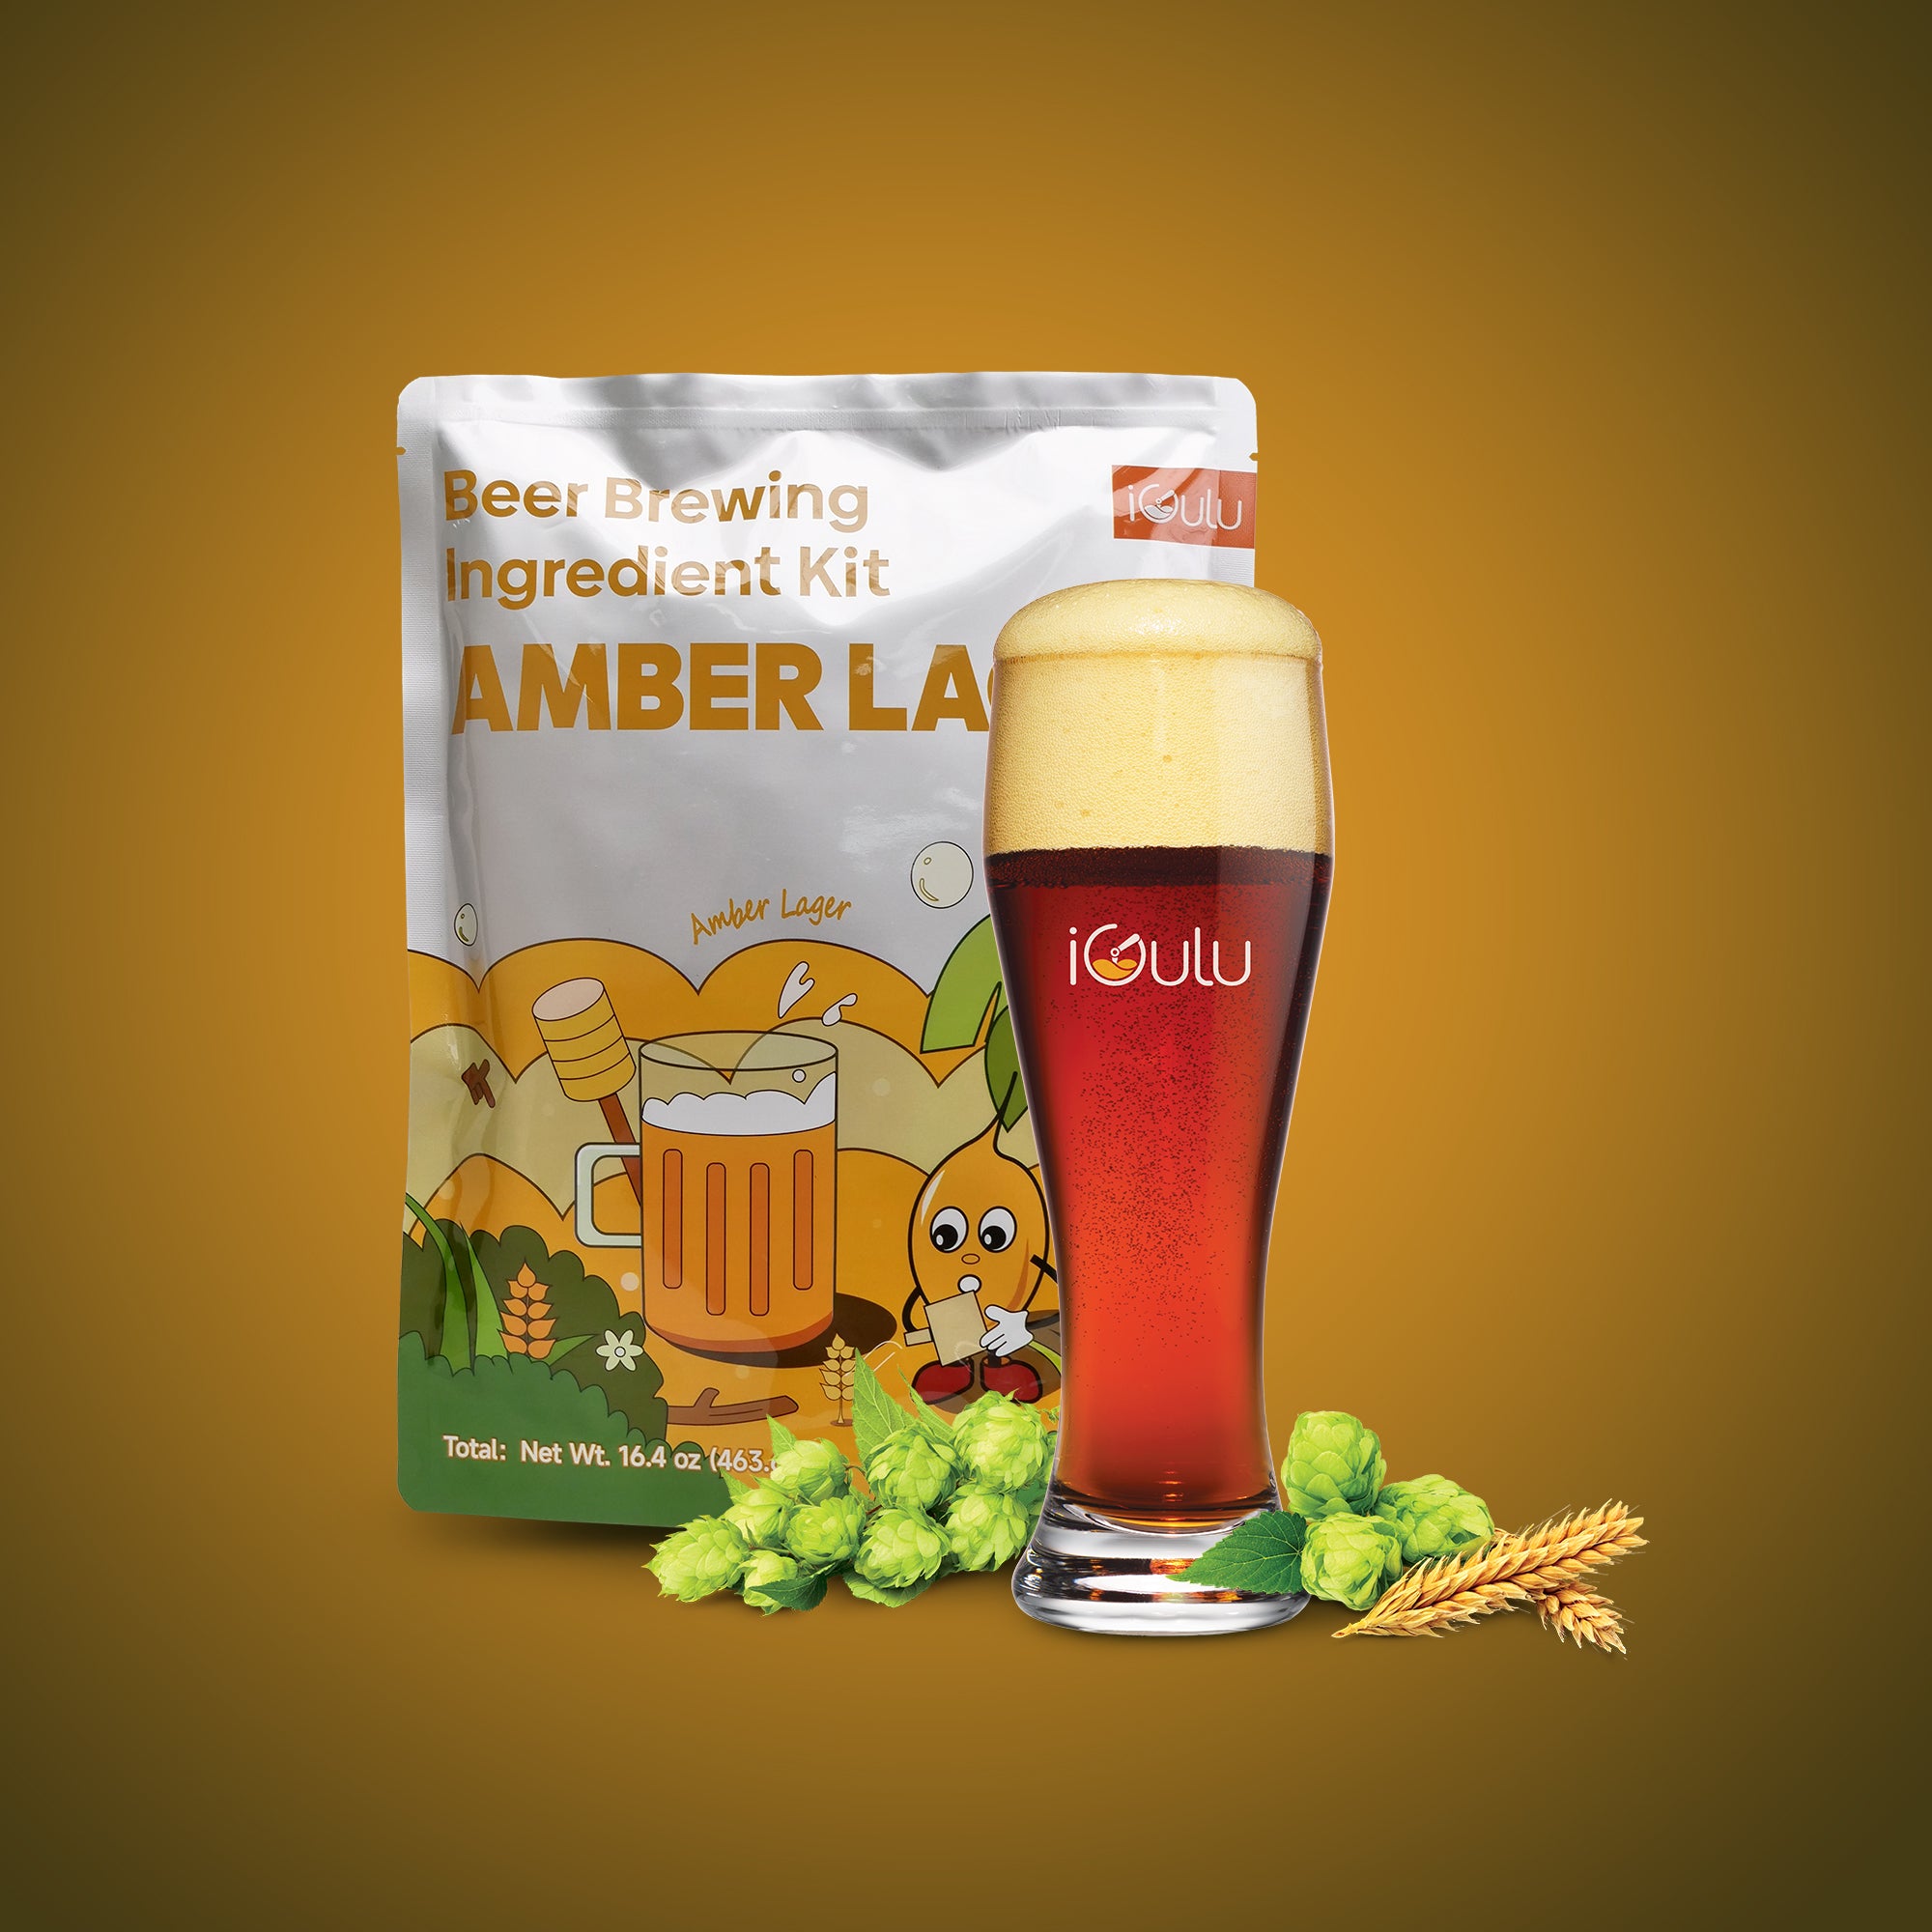 Amber Lager Beer Brewing Ingredient Kit